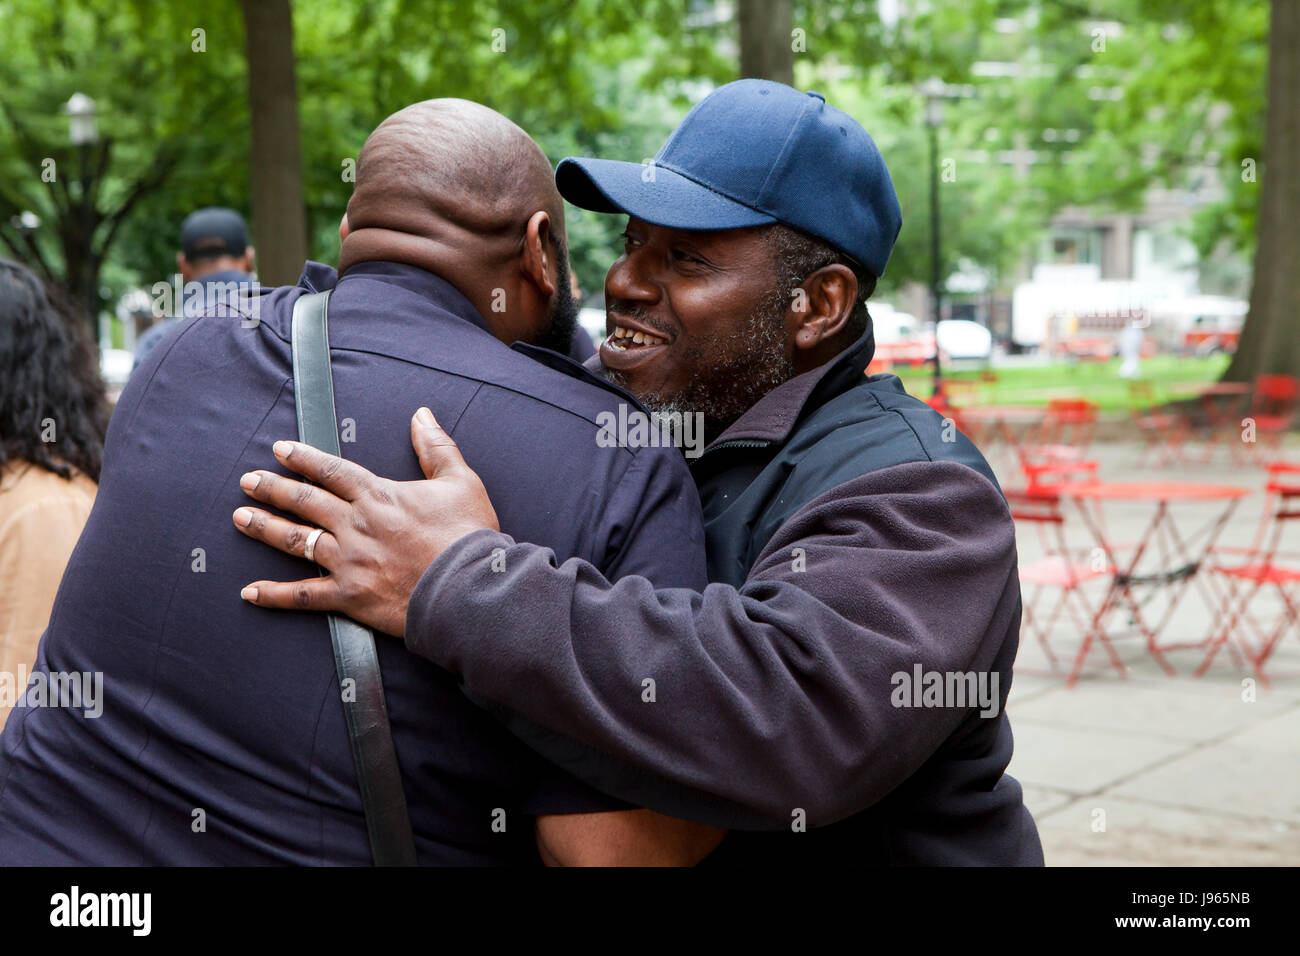 Los hombres afroamericanos dándose mutuamente un "abrazo" - EE.UU. Foto de stock